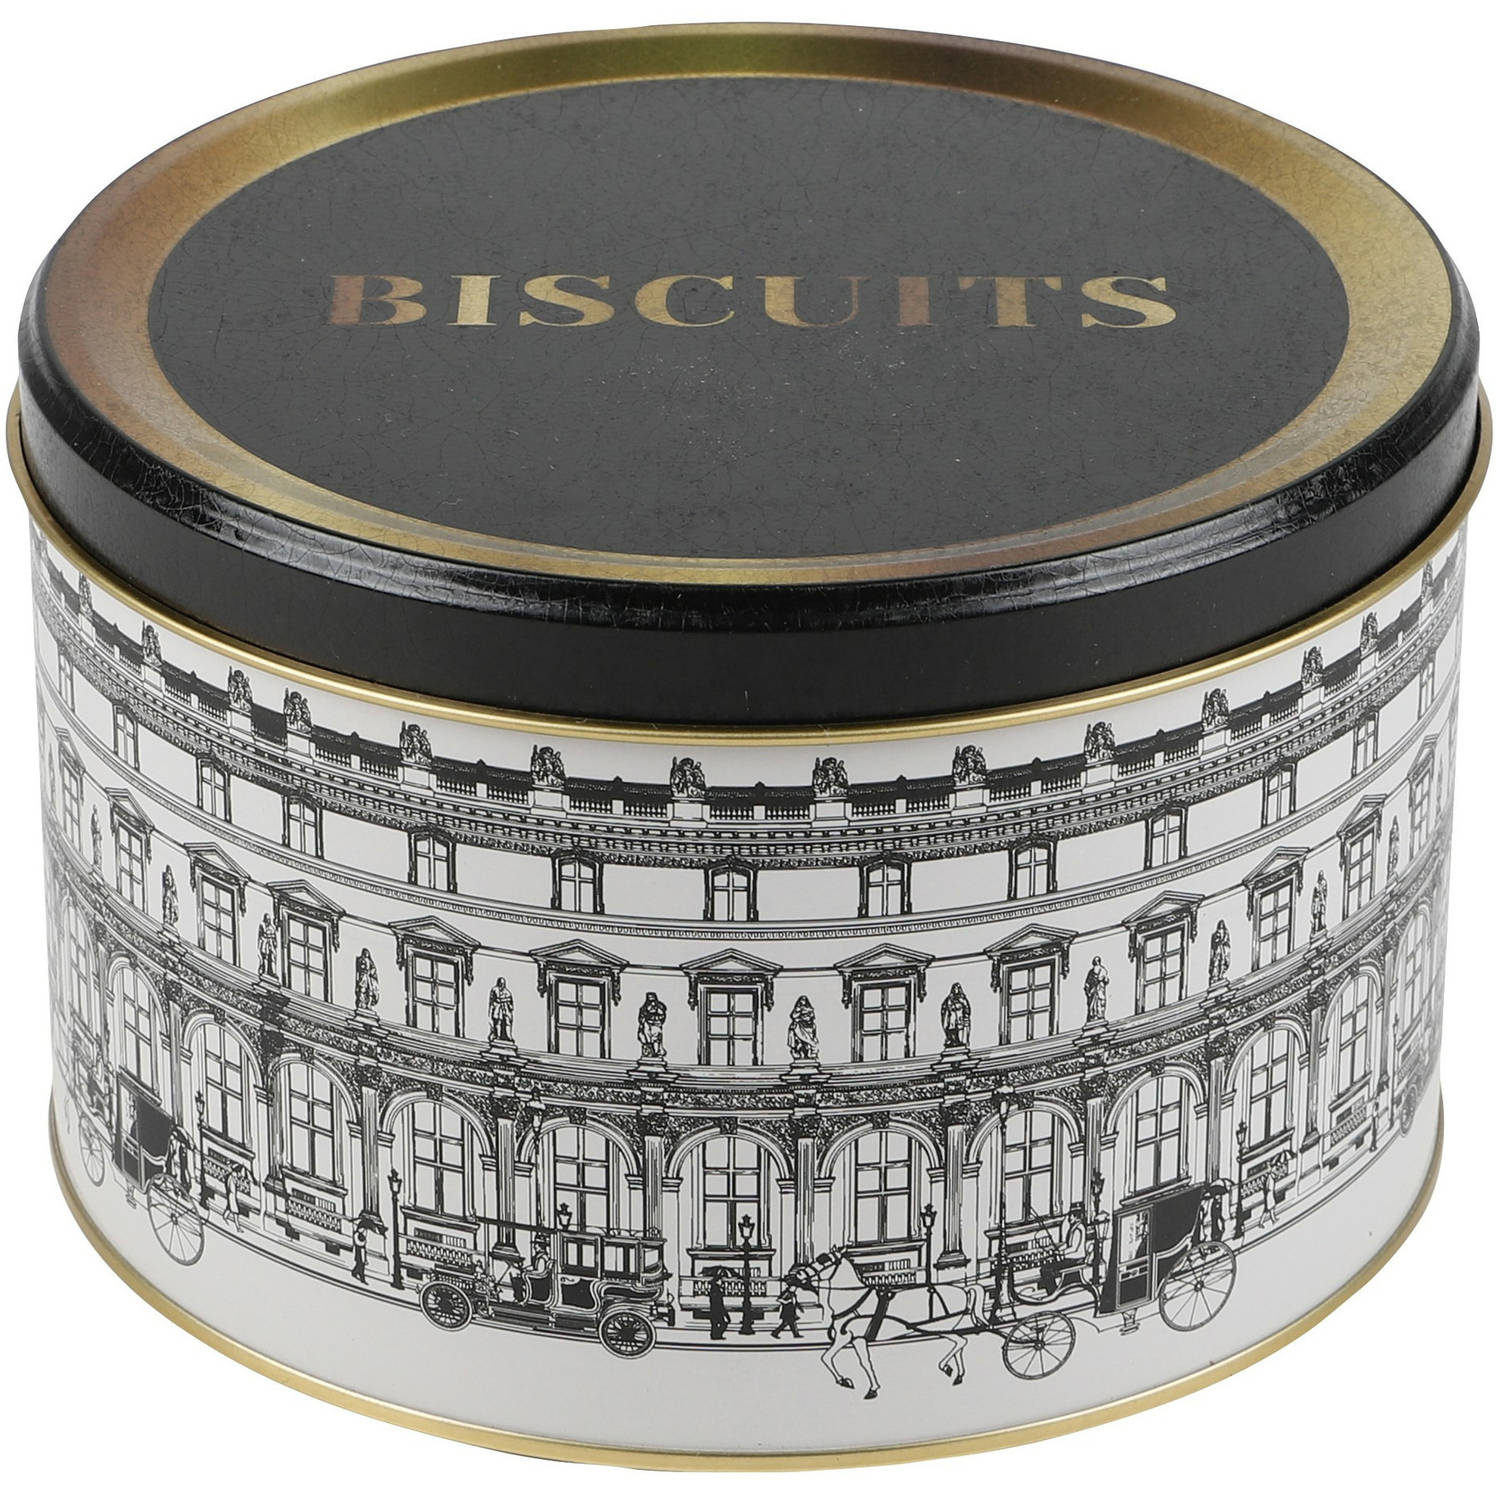 Urban Living koektrommel/voorraadblik Biscuits - Versailles - metaal - wit/zwart - 17 x 11 cm